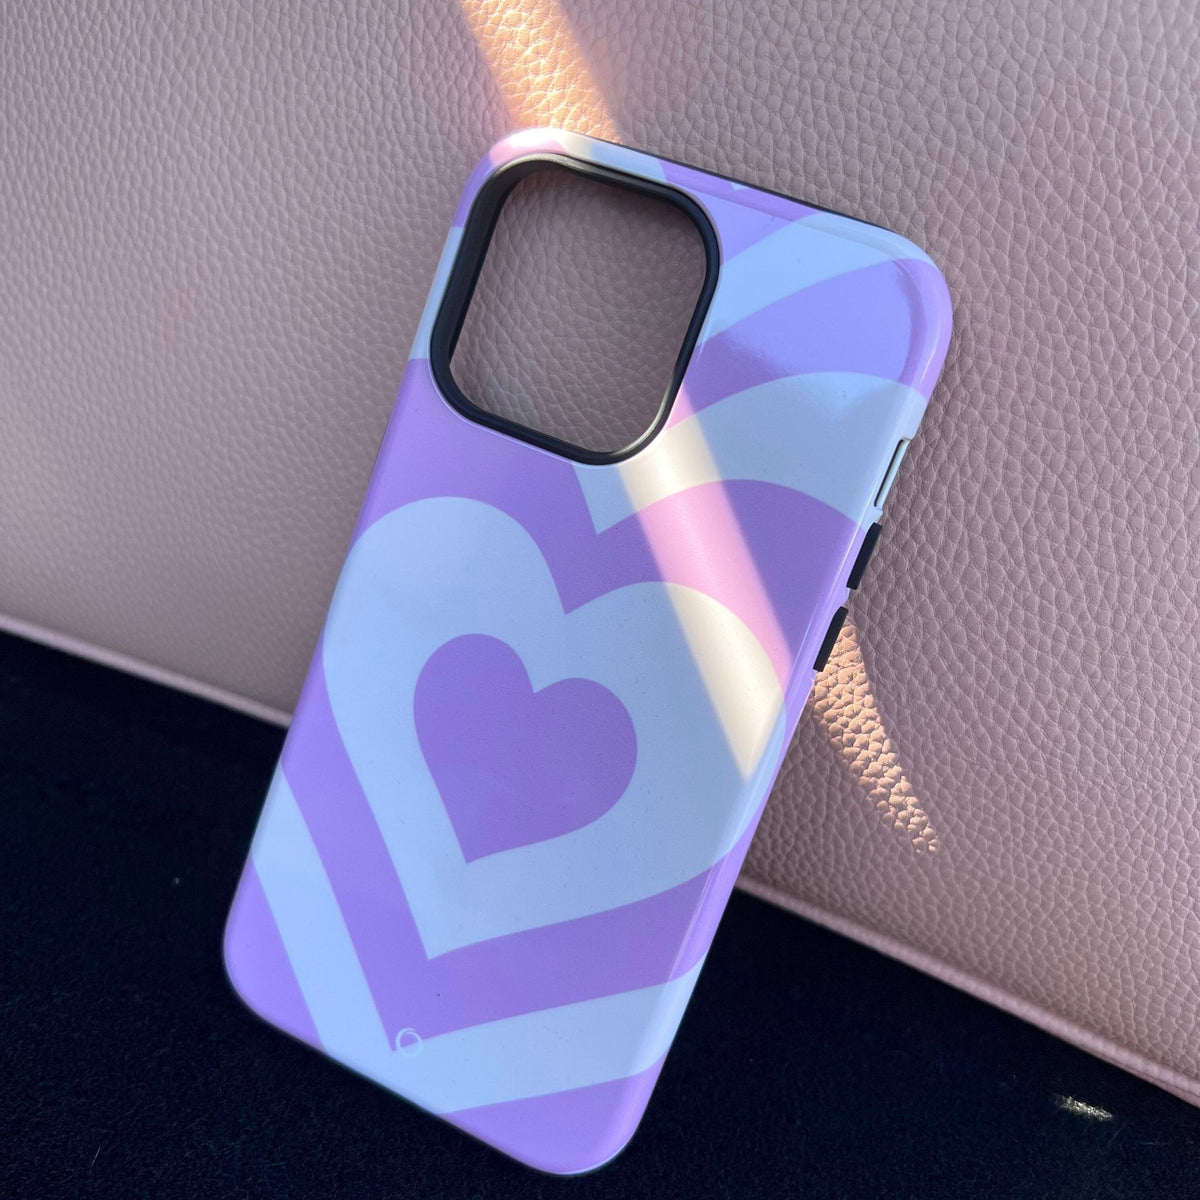 Purple Heartbeat iPhone 11 Case